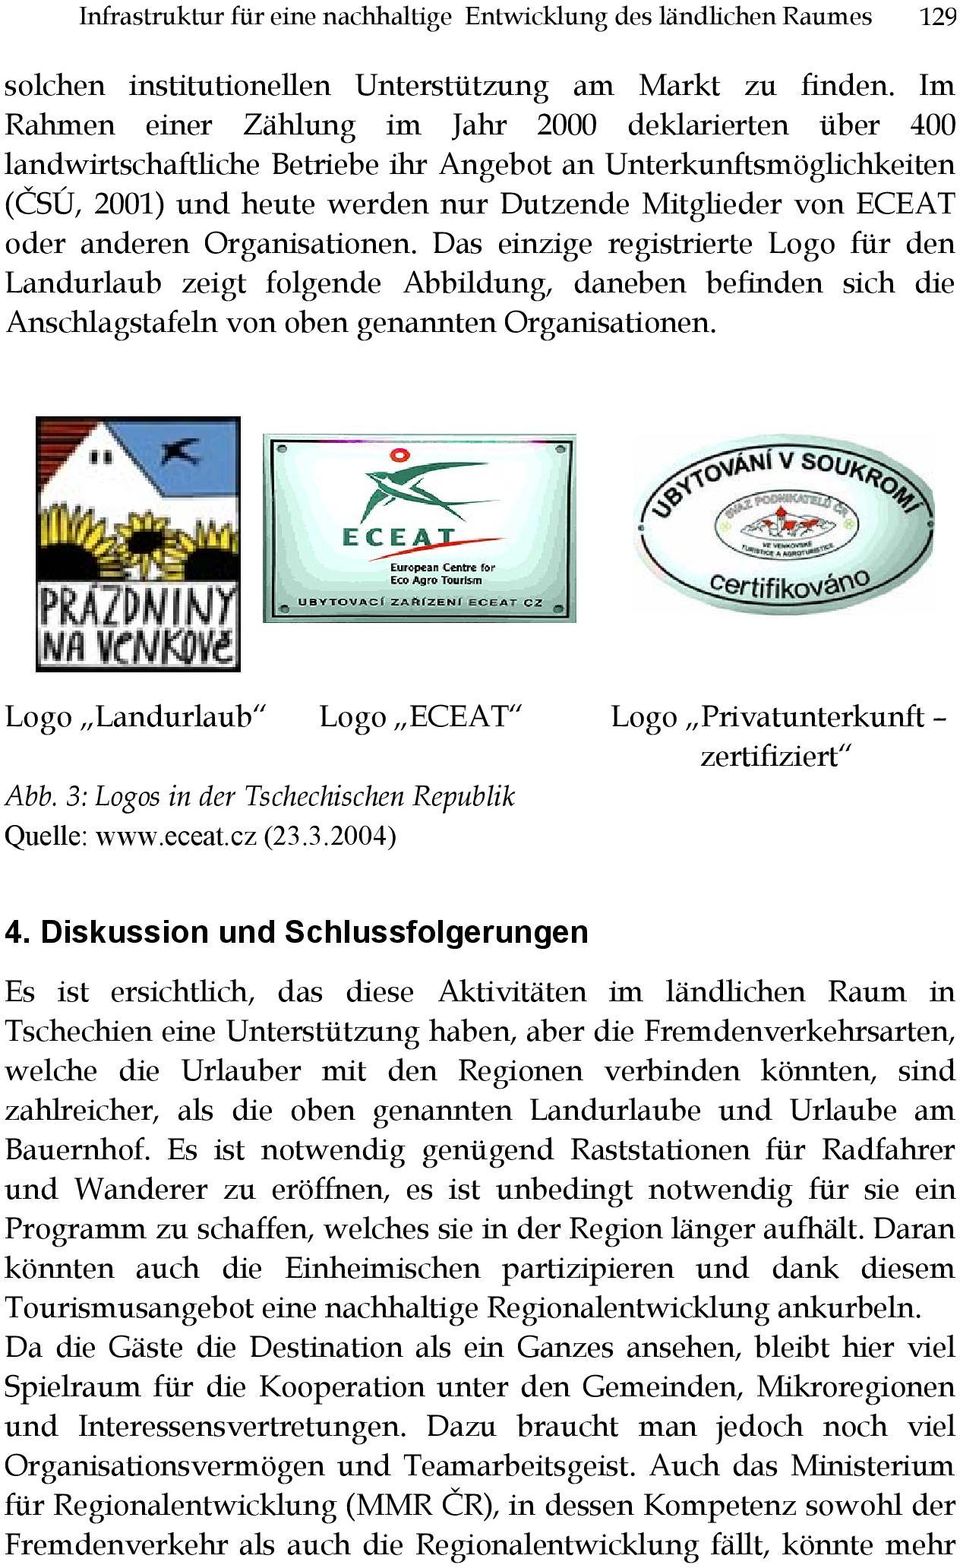 anderen Organisationen. Das einzige registrierte Logo für den Landurlaub zeigt folgende Abbildung, daneben befinden sich die Anschlagstafeln von oben genannten Organisationen.